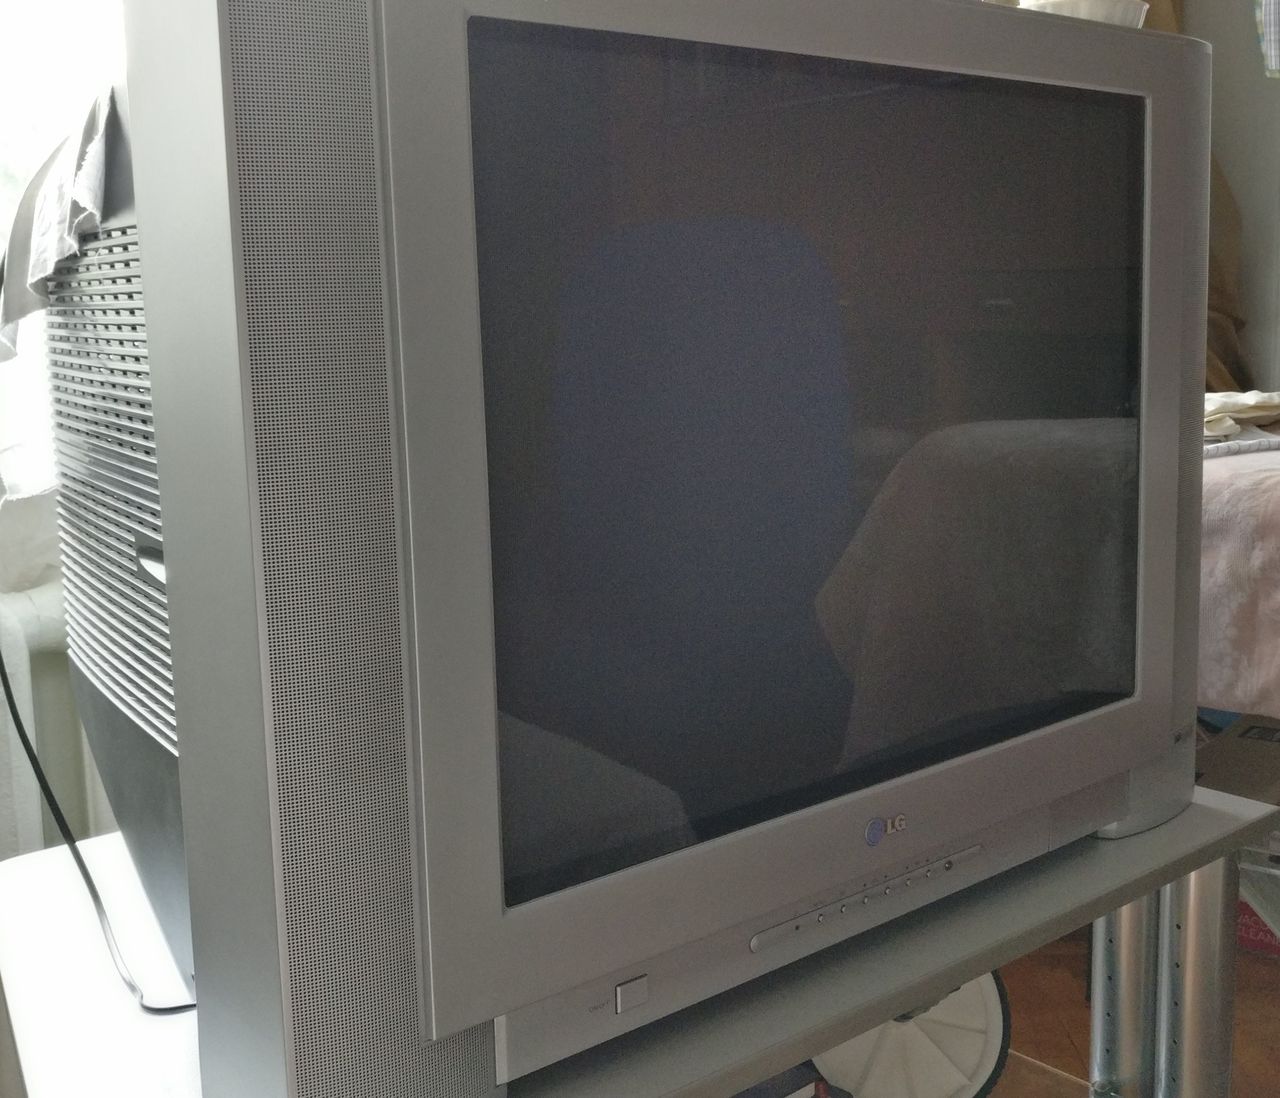 Телевизор lg старые модели. Телевизор LG 21 дюйм кинескопный. LG Flatron телевизор кинескопный. Телевизор LG RT-29fa34rb 29". Телевизор 20 дюймов кинескопный LG 20th.